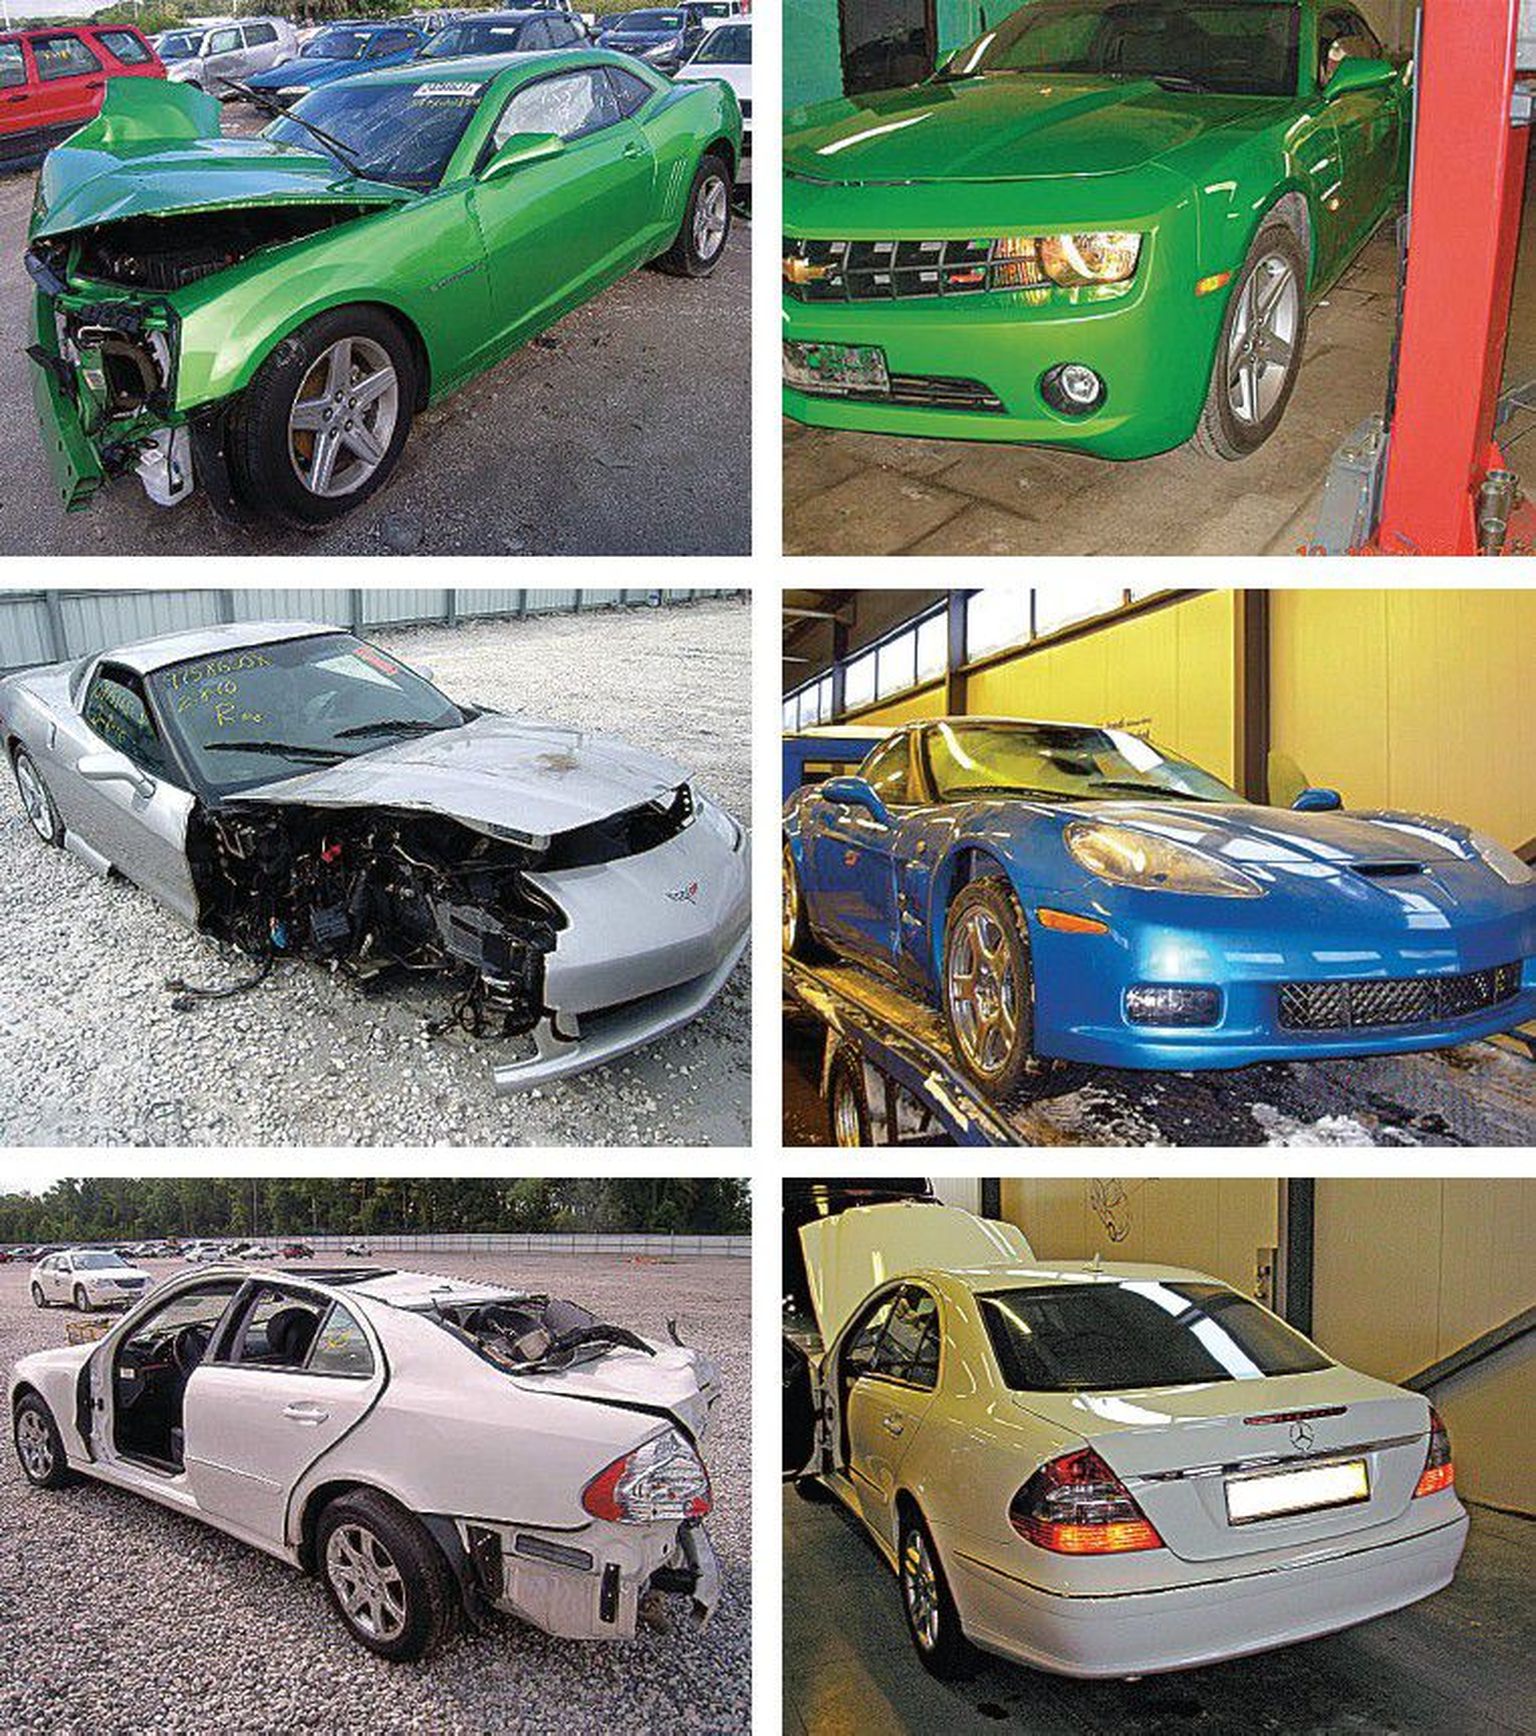 Eelmisel nädalal avaldas maanteeament terve rea fotosid avariilistest autodest, mis on taastatud väliselt sõidukõlbulikeks, kuid pahatihti ei ole sellised sõidukid siiski ohutud.